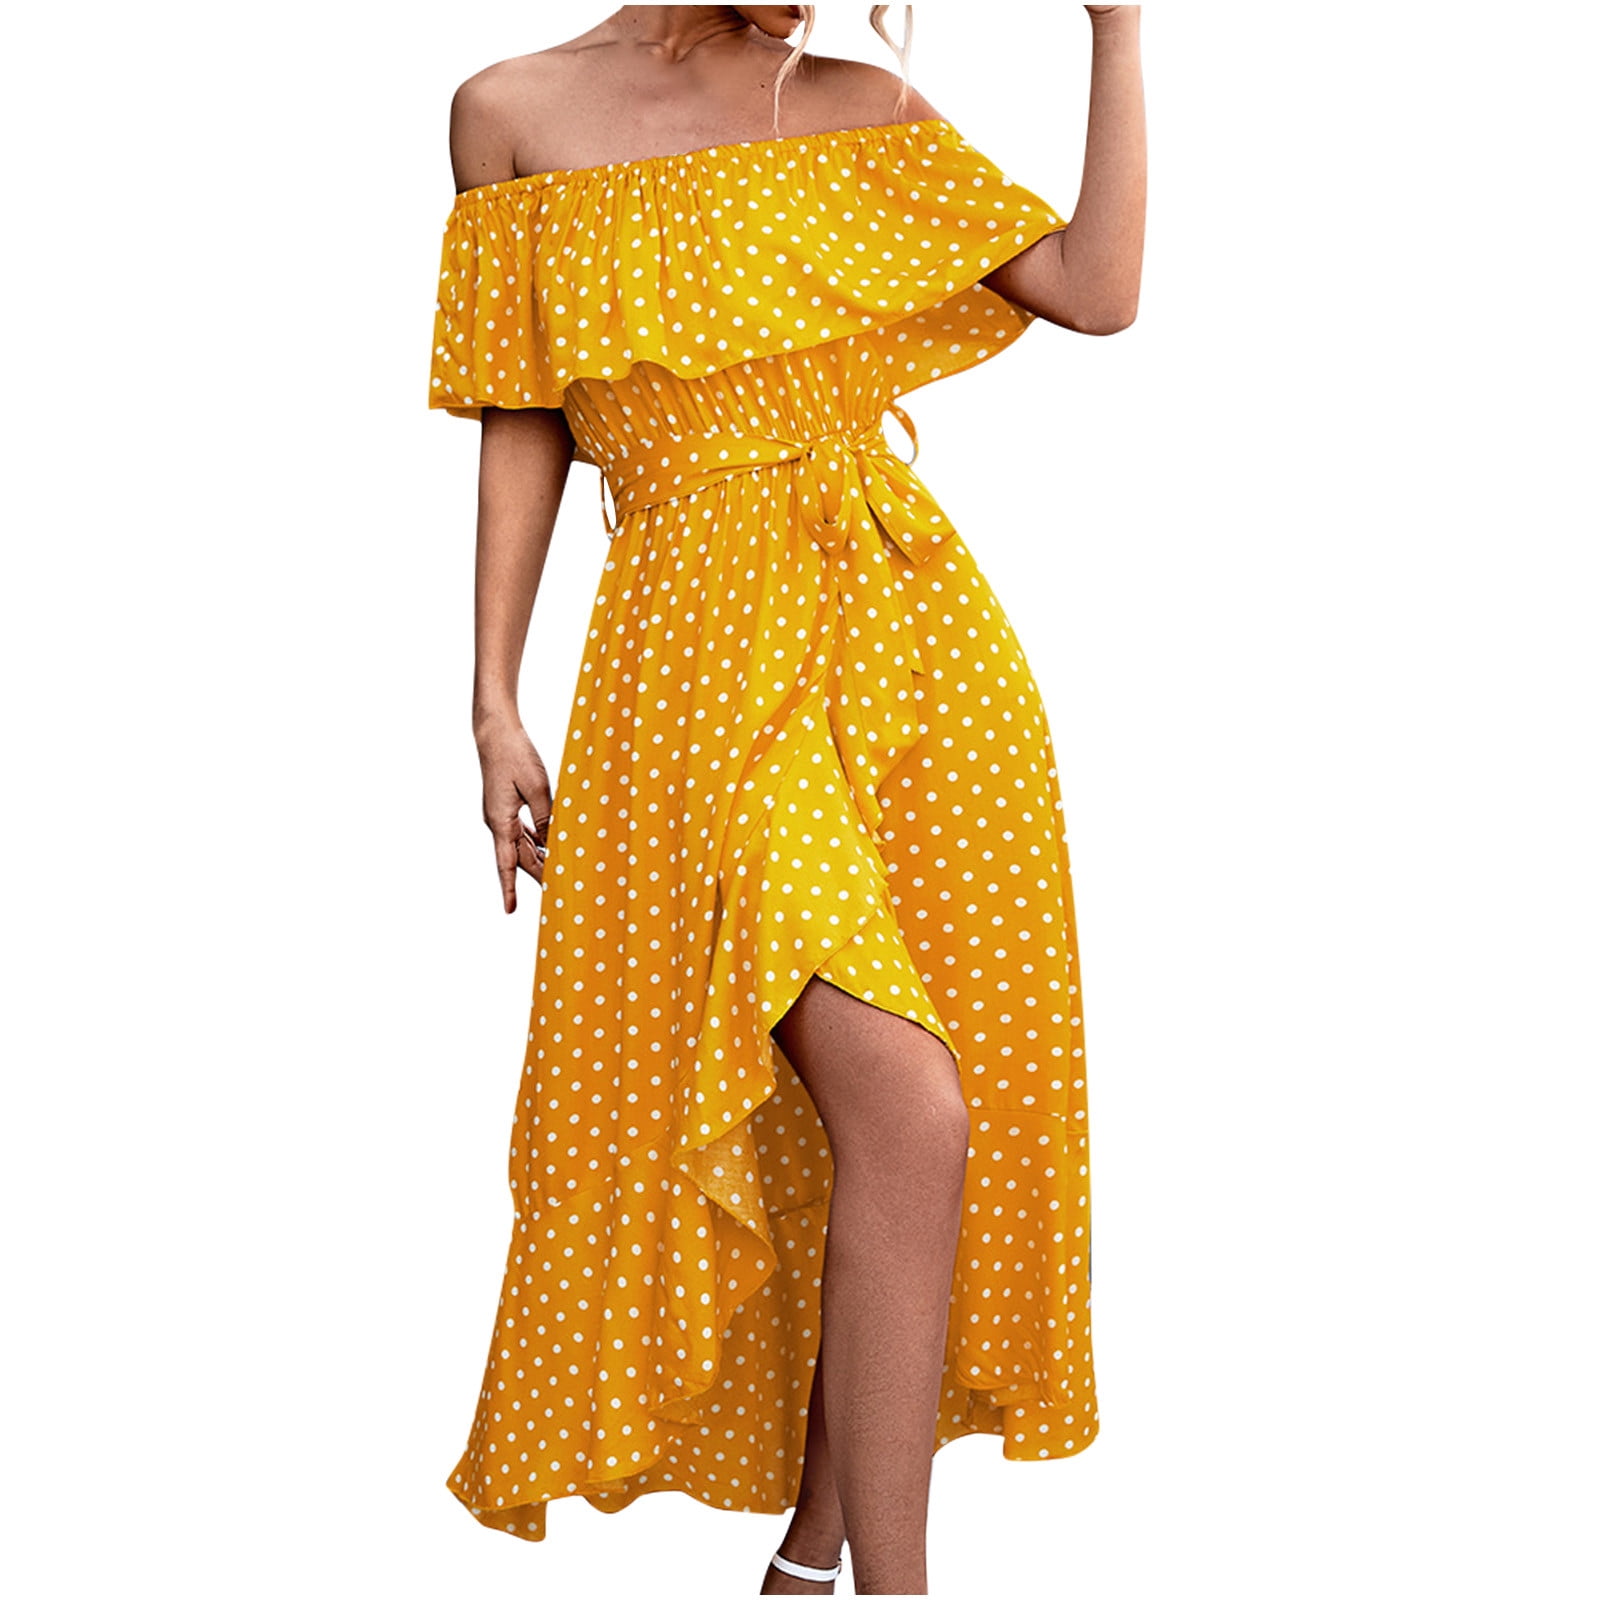 Polka Dot Women Dress Summer Beach Sundress High Low Asymmetrical Swing Hem